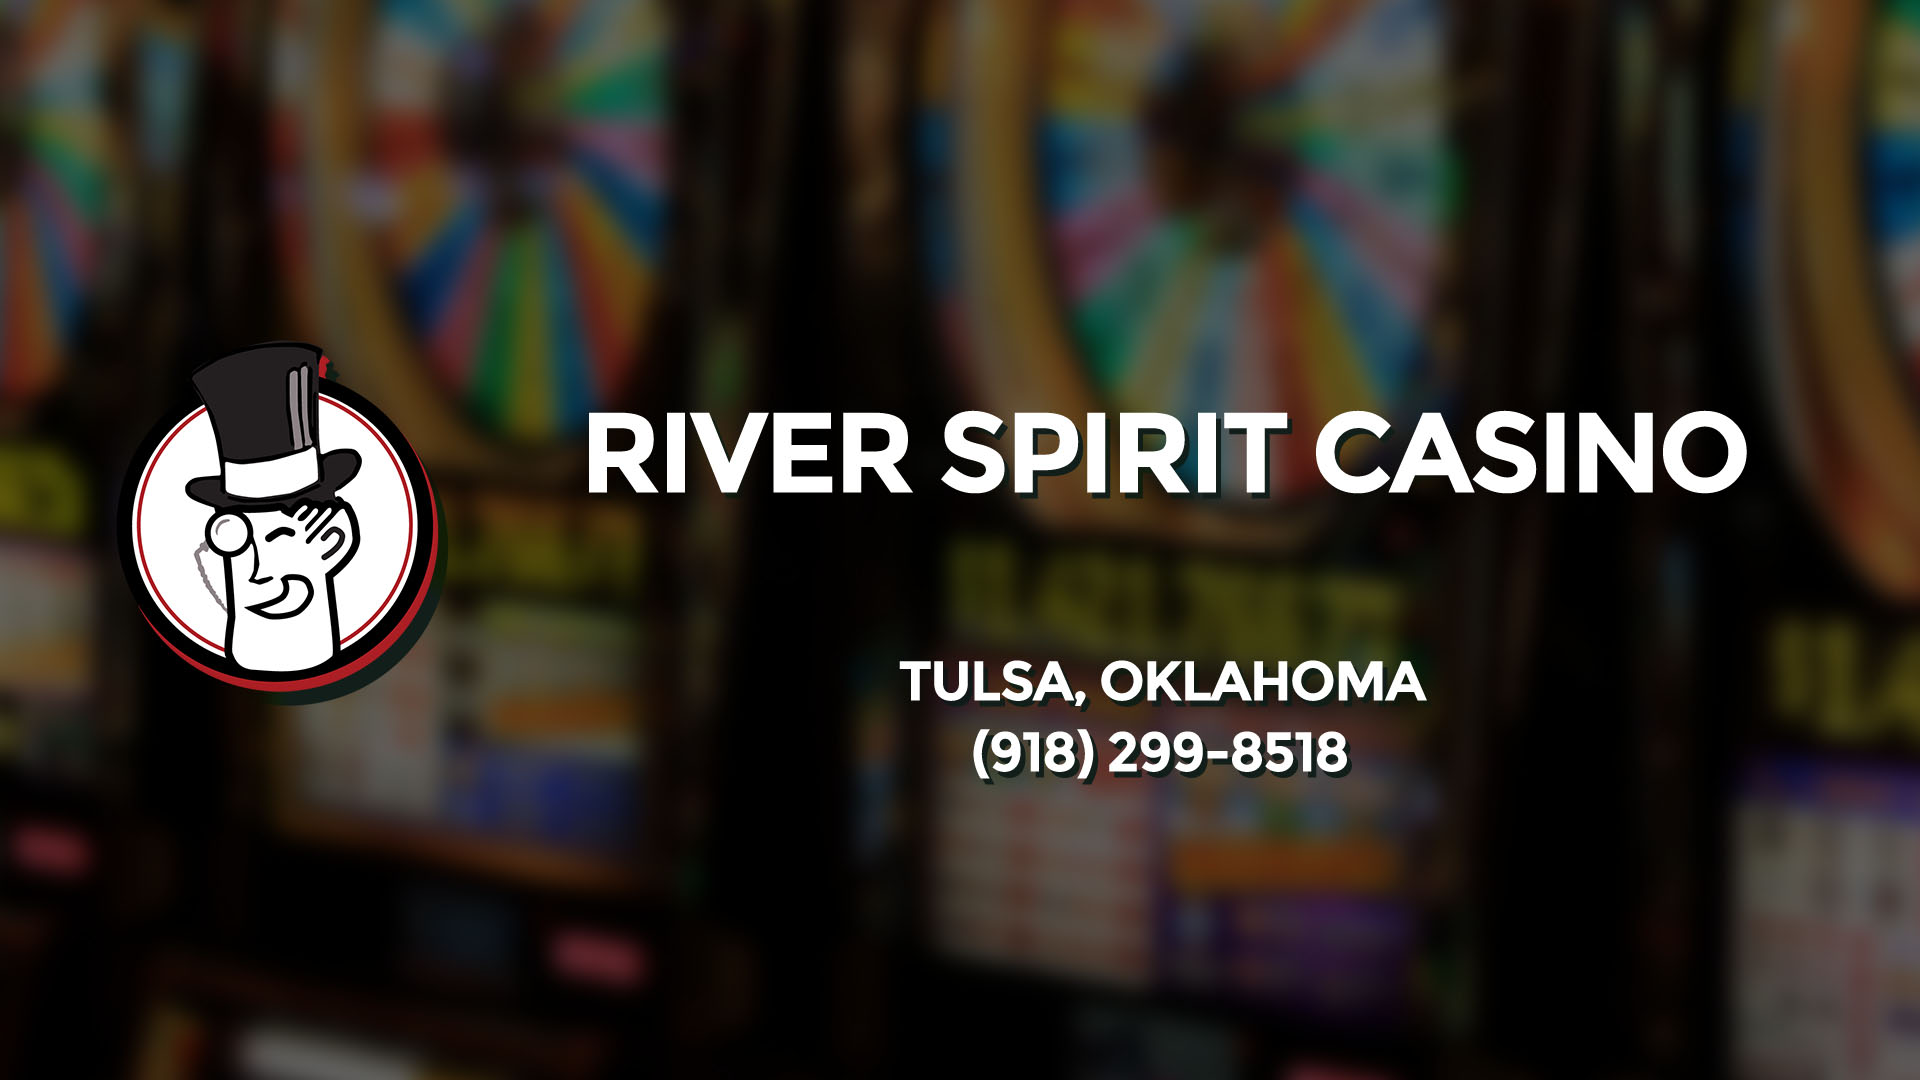 river spirit casino slots pictures tulsa